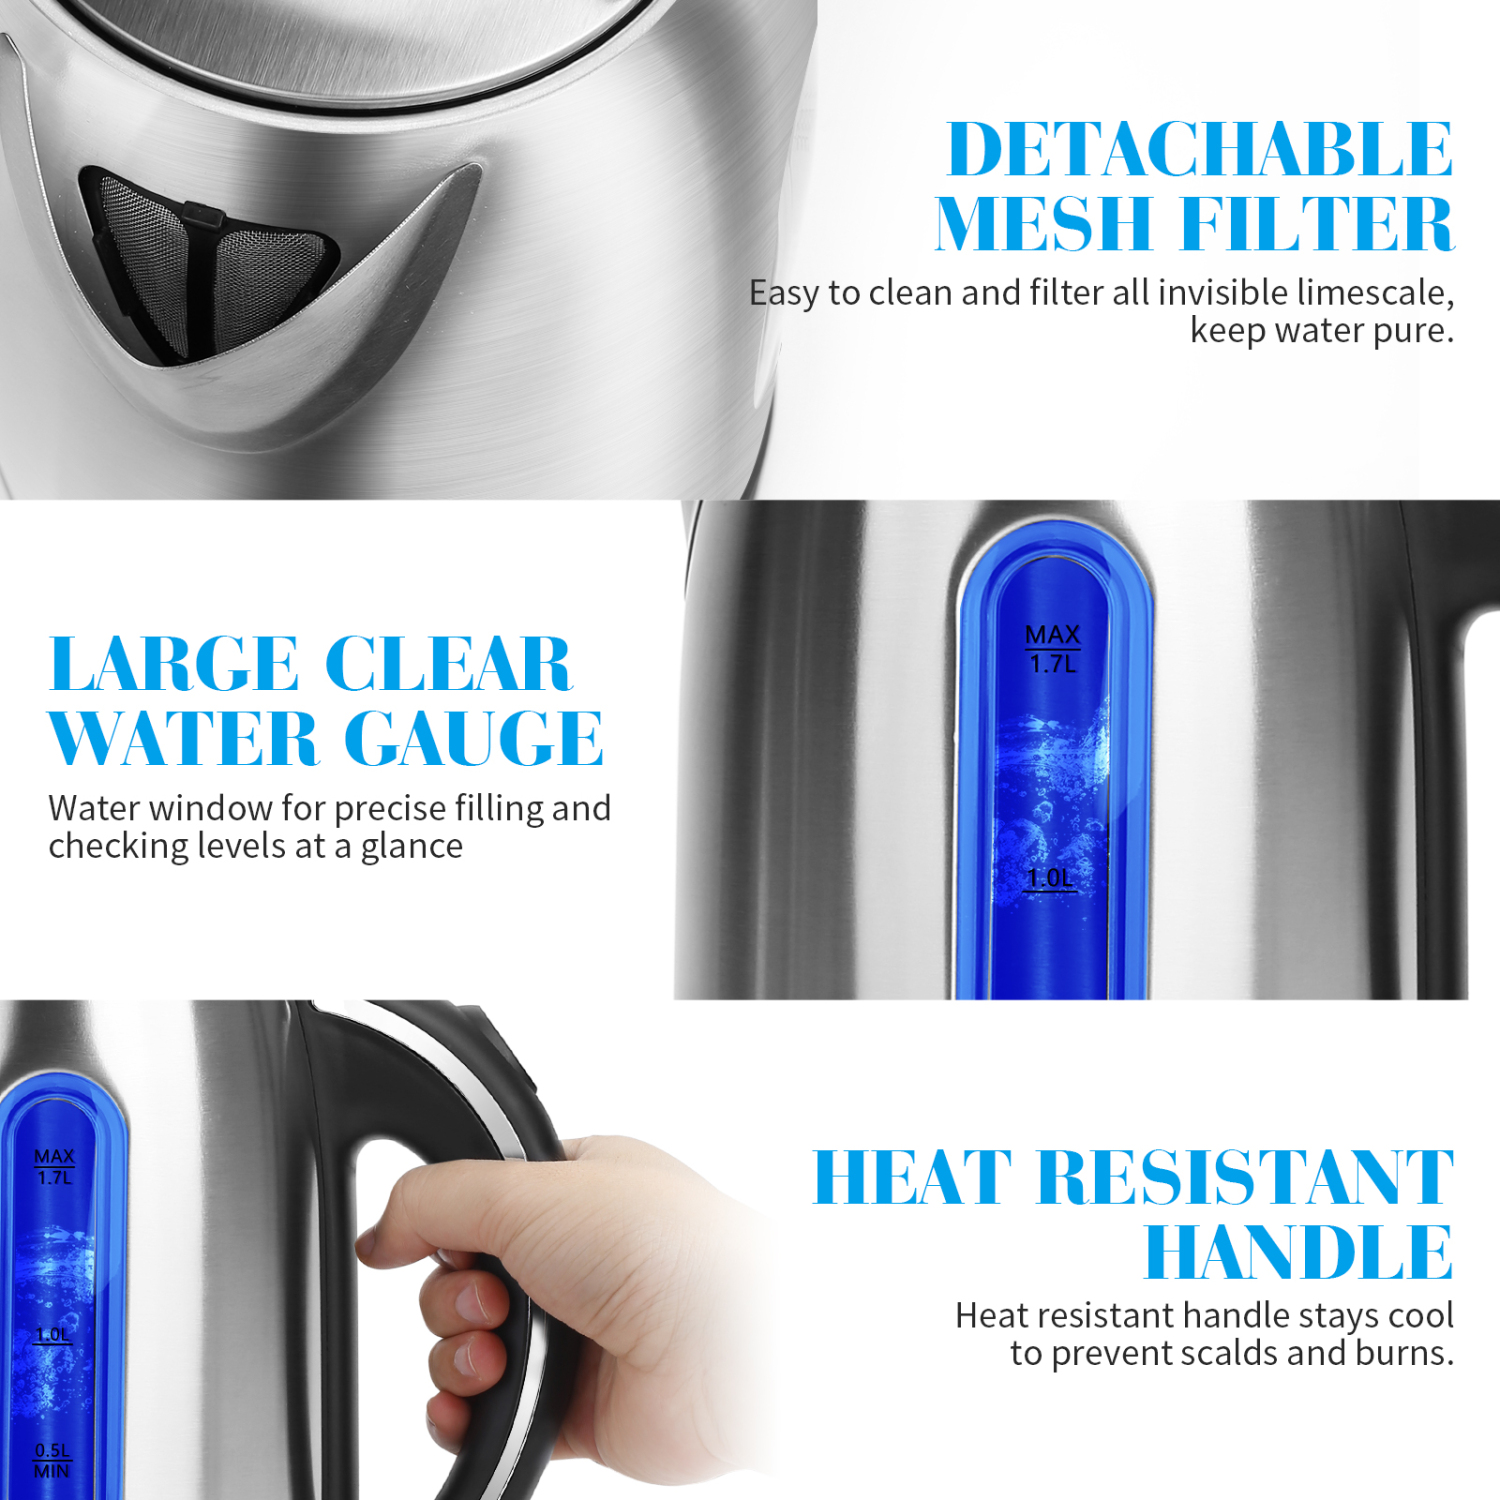 Aigostar King 30CEA – Hervidor de agua con iluminación led de 1,7 litros de capacidad, potencia de 2200 watios, libre de BPA y material de acero inoxidable pulido. Sistema de protección contra la ebullición en seco. Diseño exclusivo.